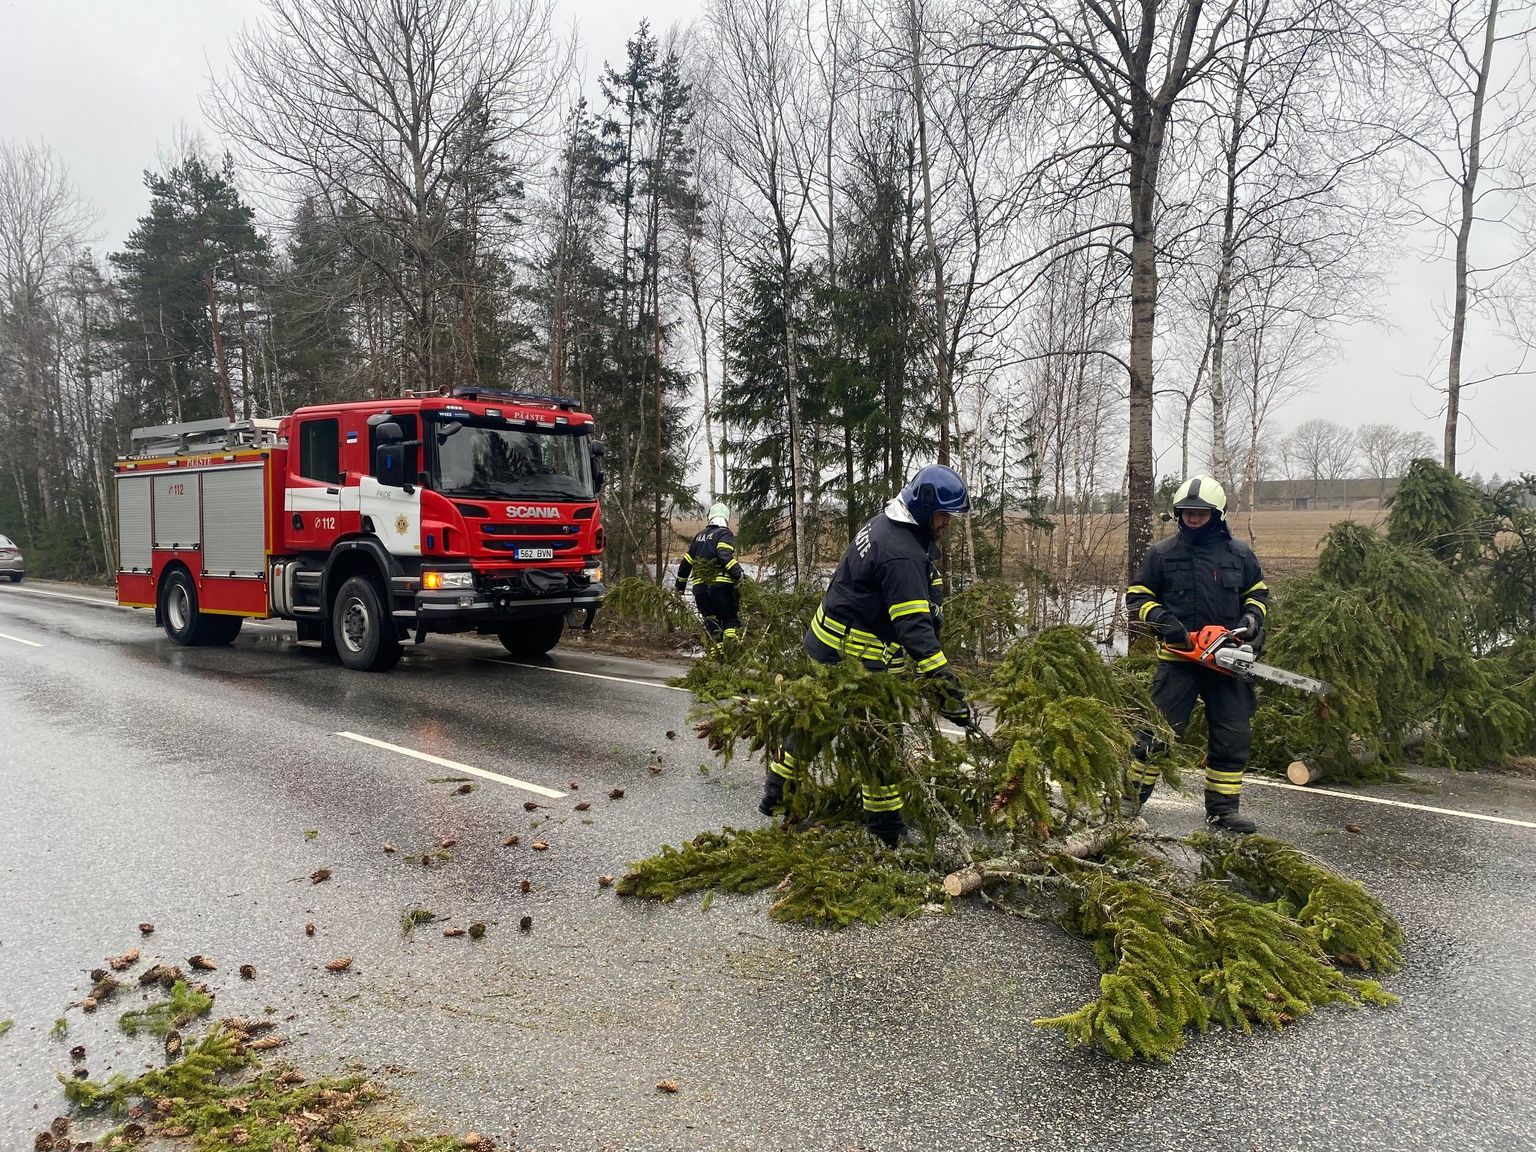 Tormiga maha kukkunud kuusk Pärnu-Rakvere maanteel Roosna-Alliku kandis.